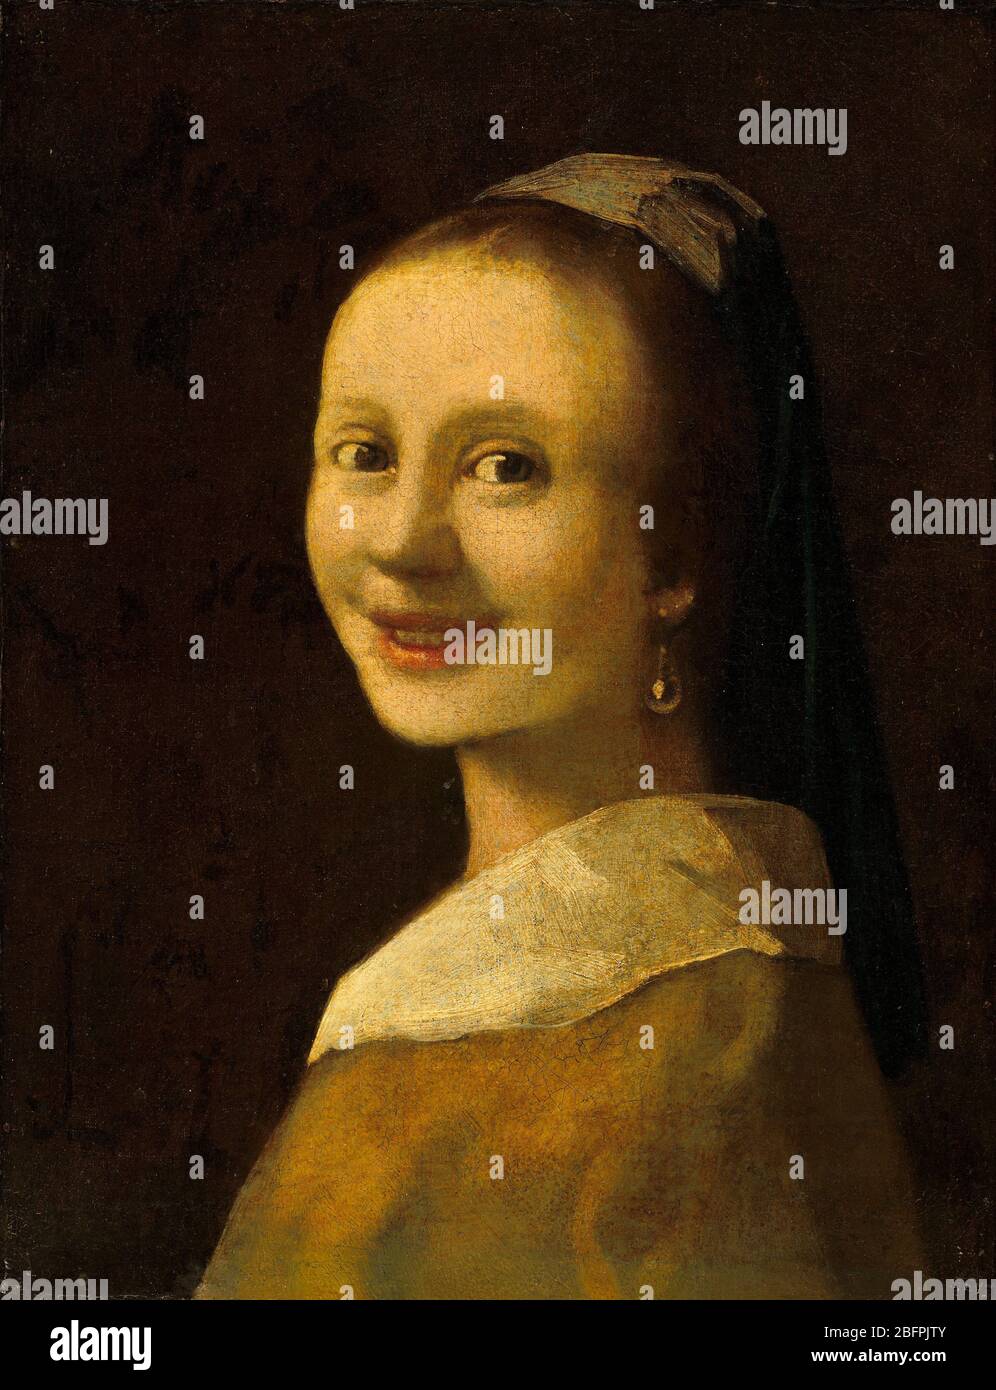 Chica sonriente, la falsificación más probablemente pintado por han van Meegeren Anónimo imitador de Johannes Vermeer falso vermeer Foto de stock